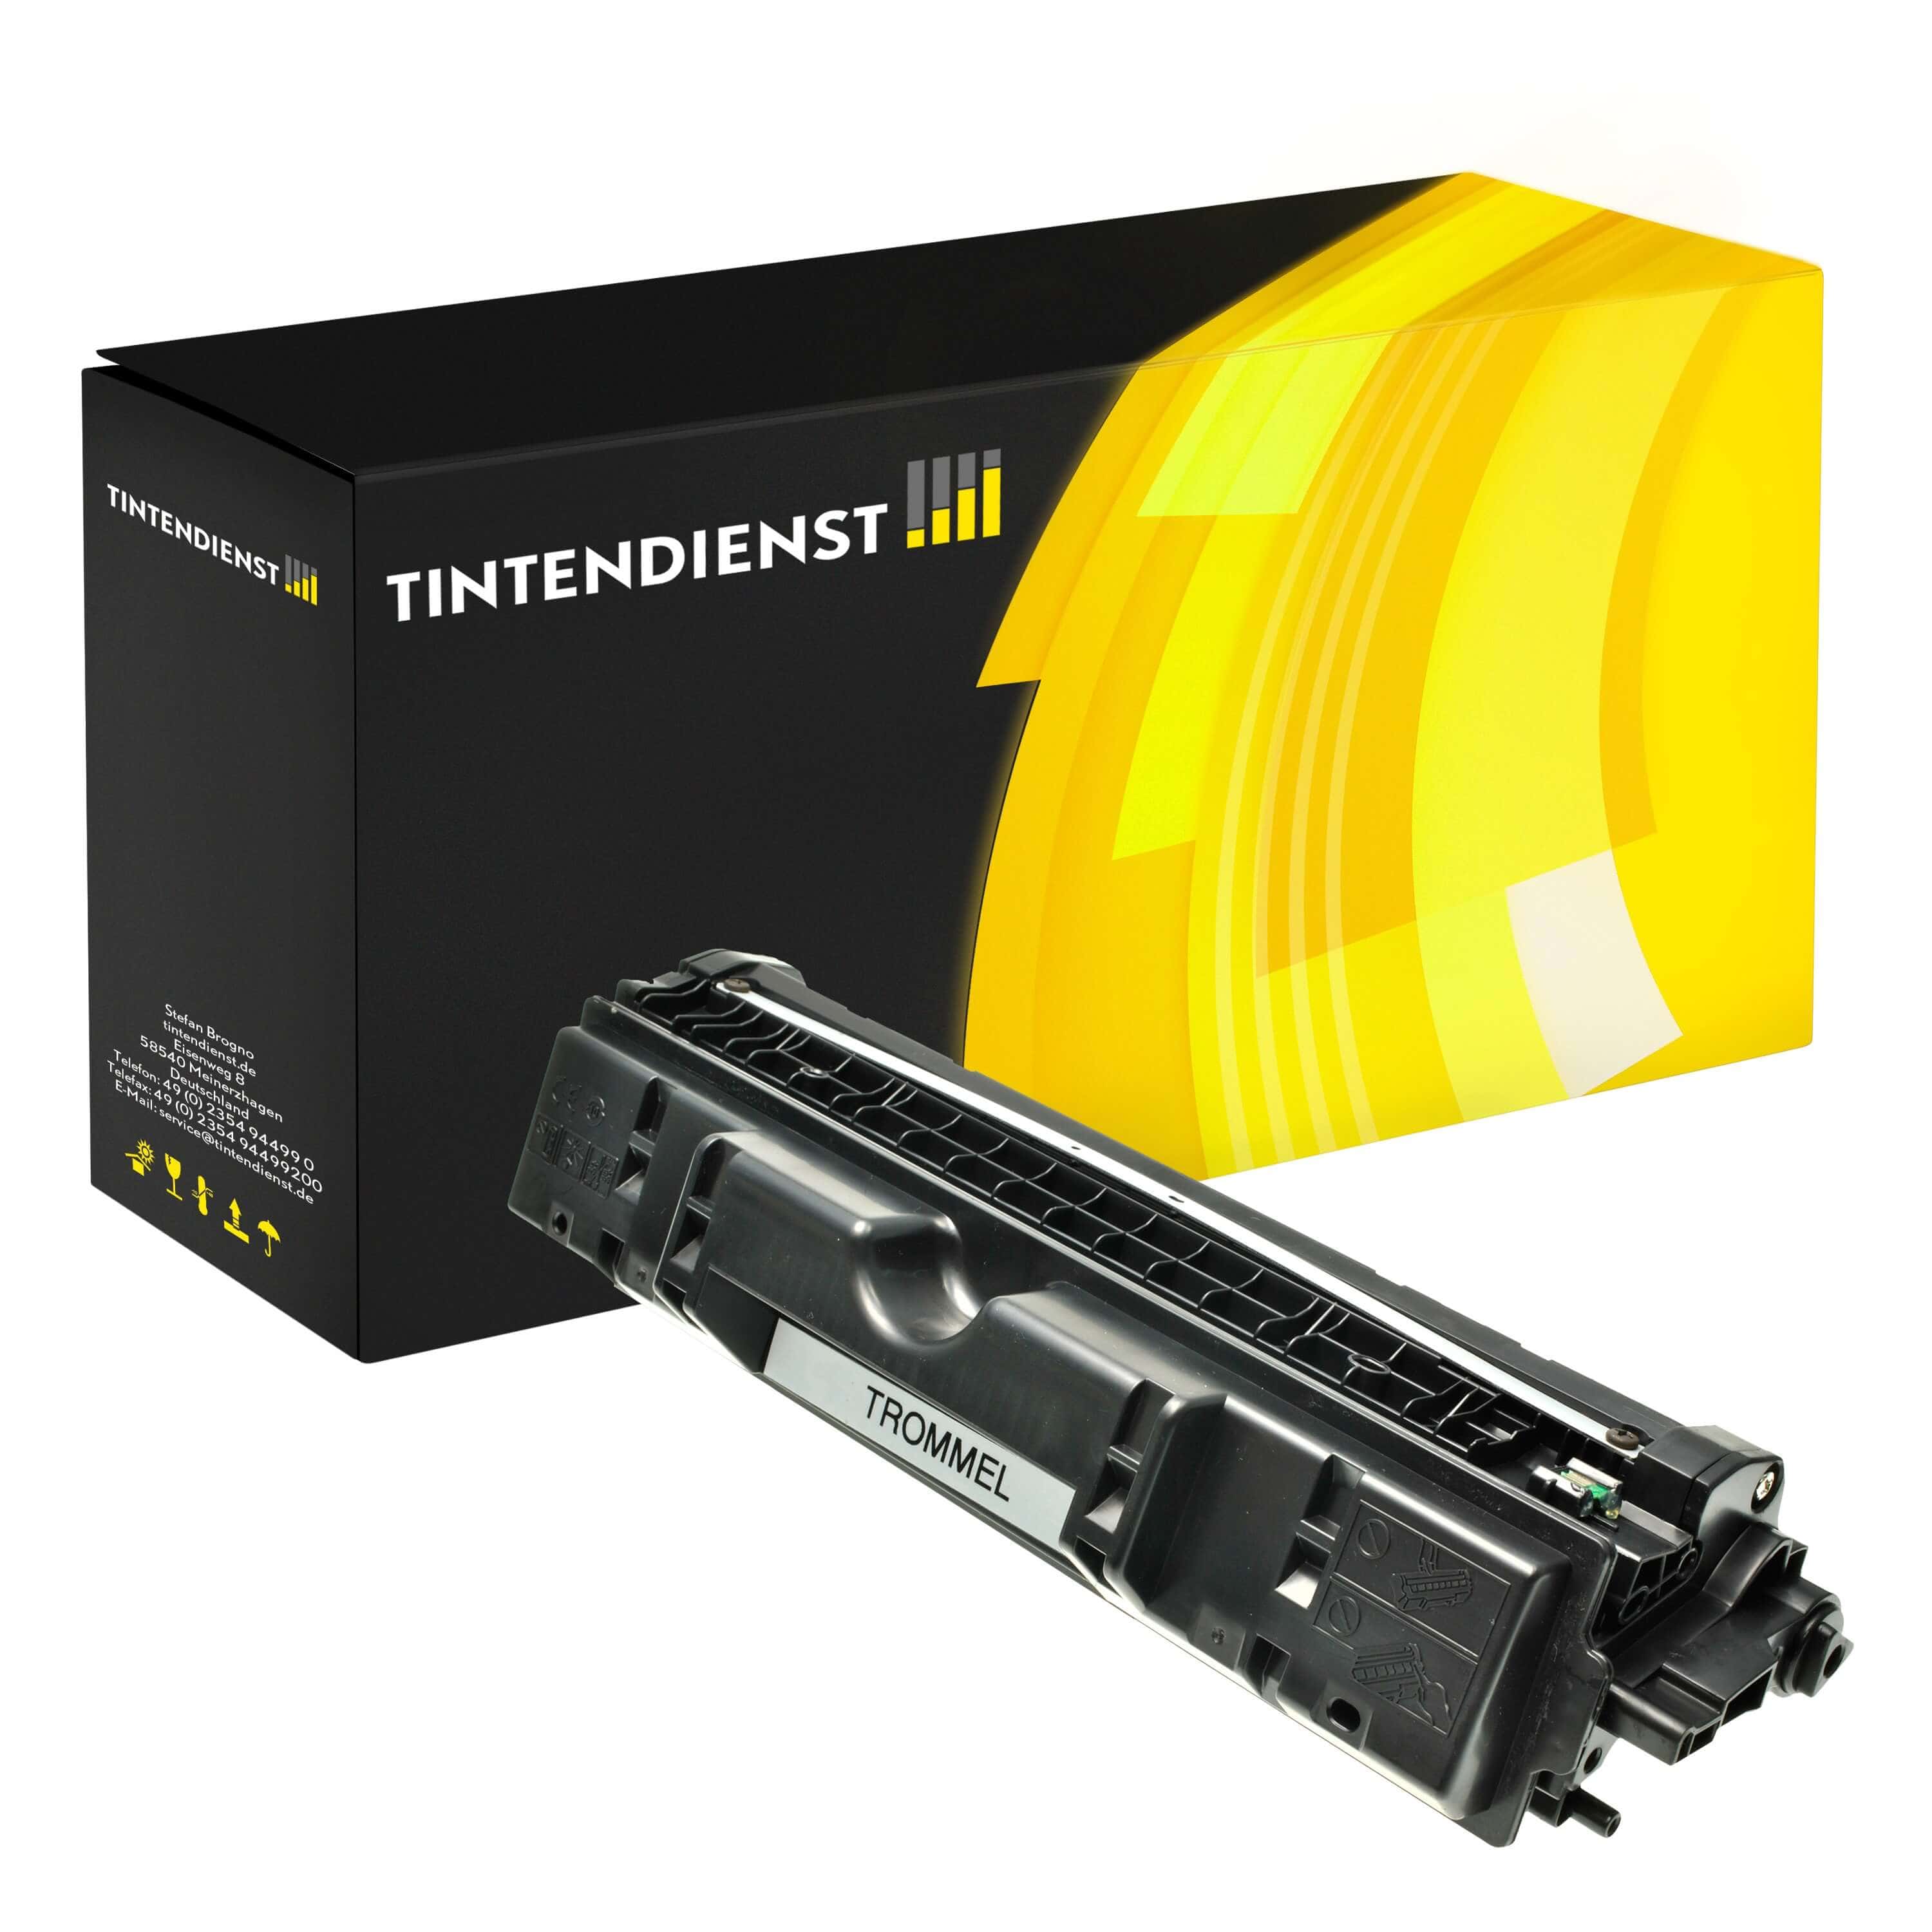 Trommel kompatibel für HP Color LaserJet Pro CP 1028 nw (CE314A / 126A)